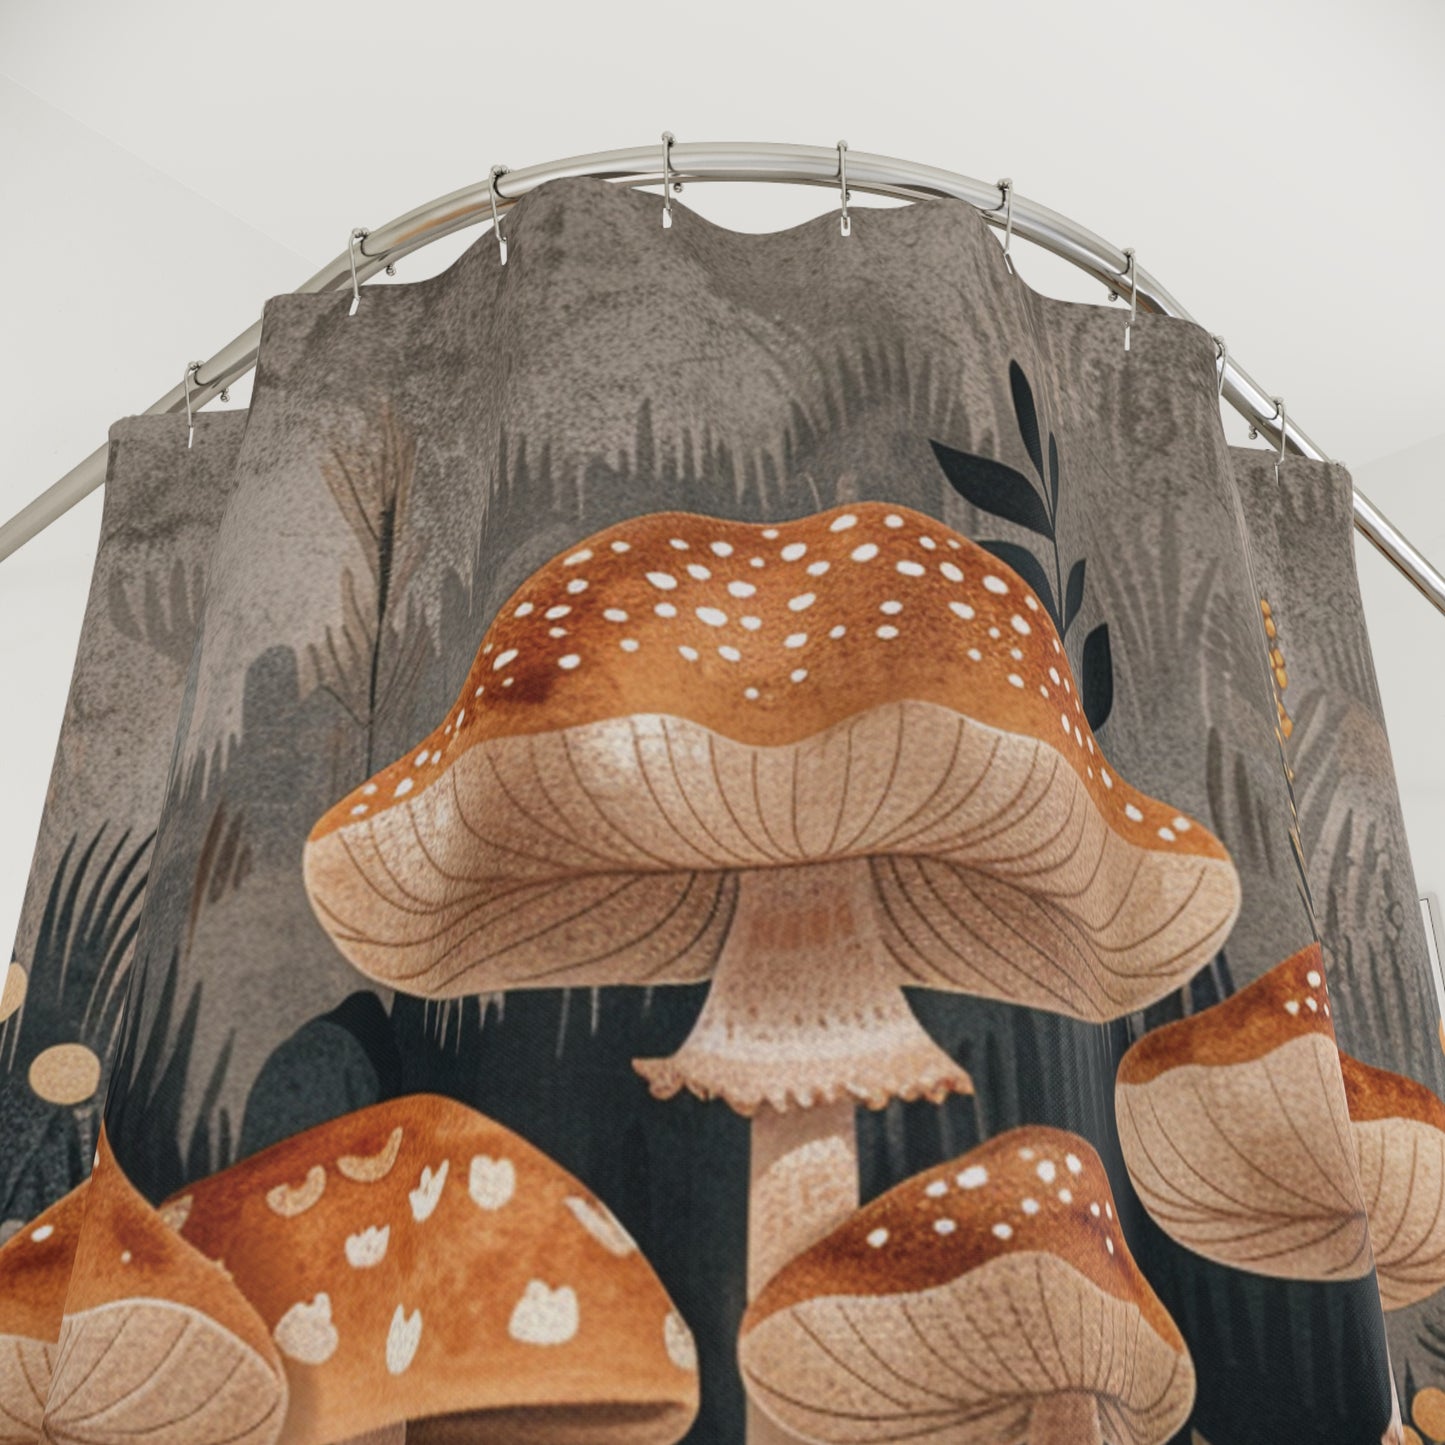 Retro Botanicals Mushroom Shower Curtain Boho Bathroom Decor